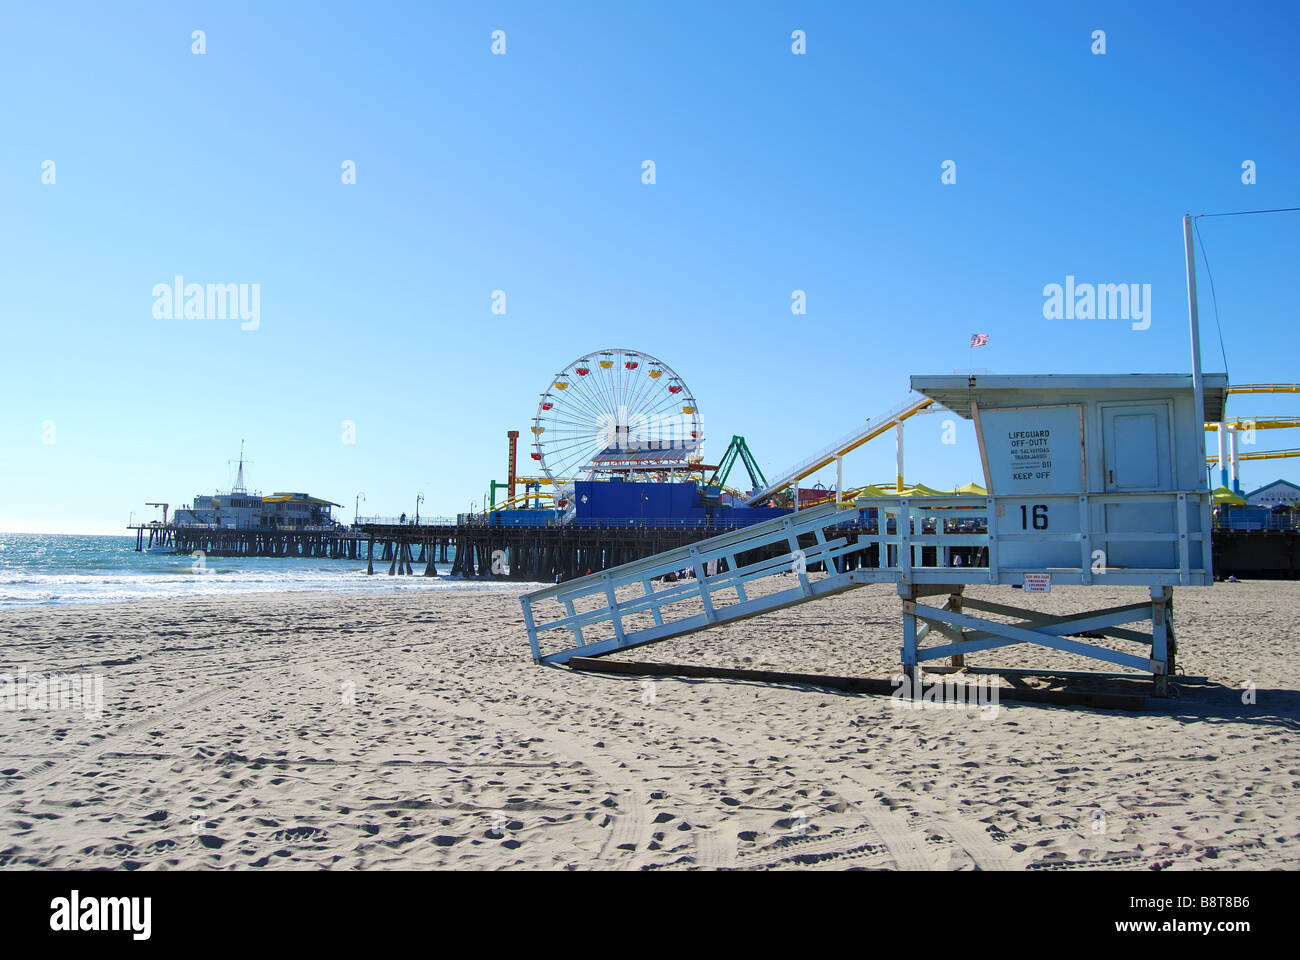 La jetée de Santa Monica, Santa Monica, Los Angeles, Californie, États-Unis d'Amérique Banque D'Images